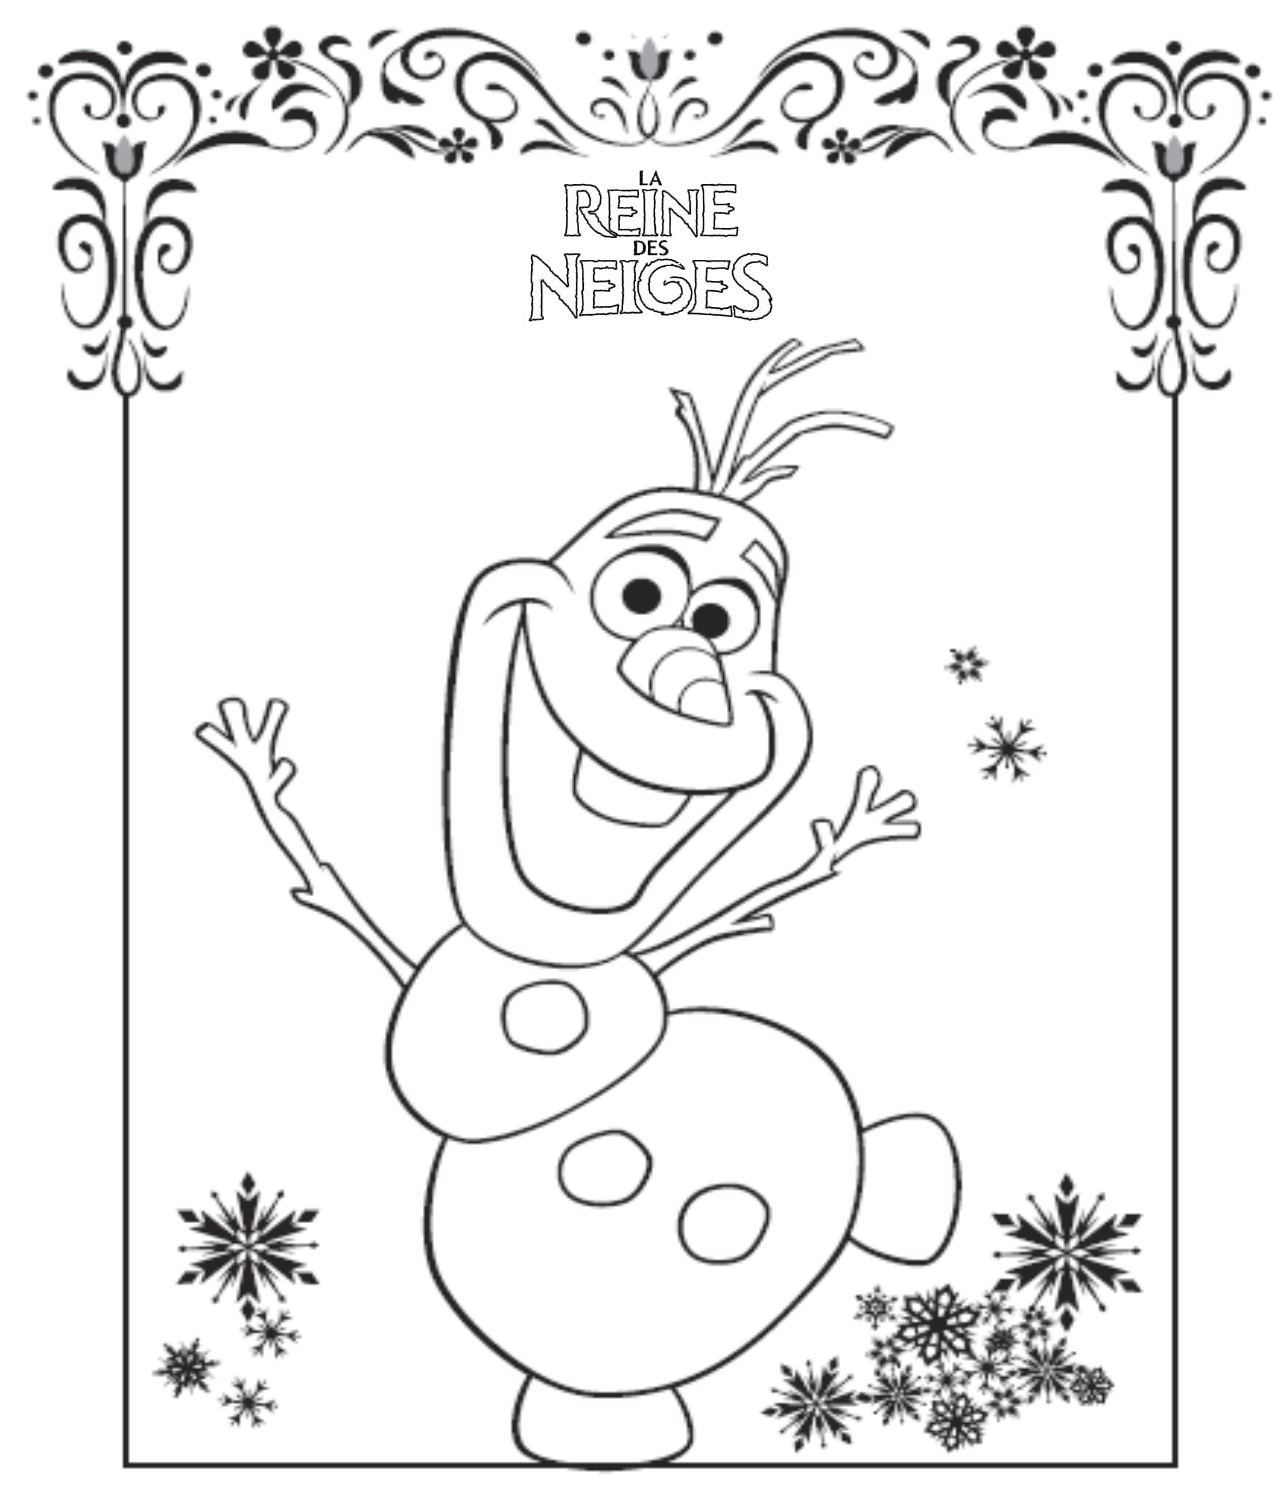 Coloriage reine des neiges gratuit - dessin a imprimer #225